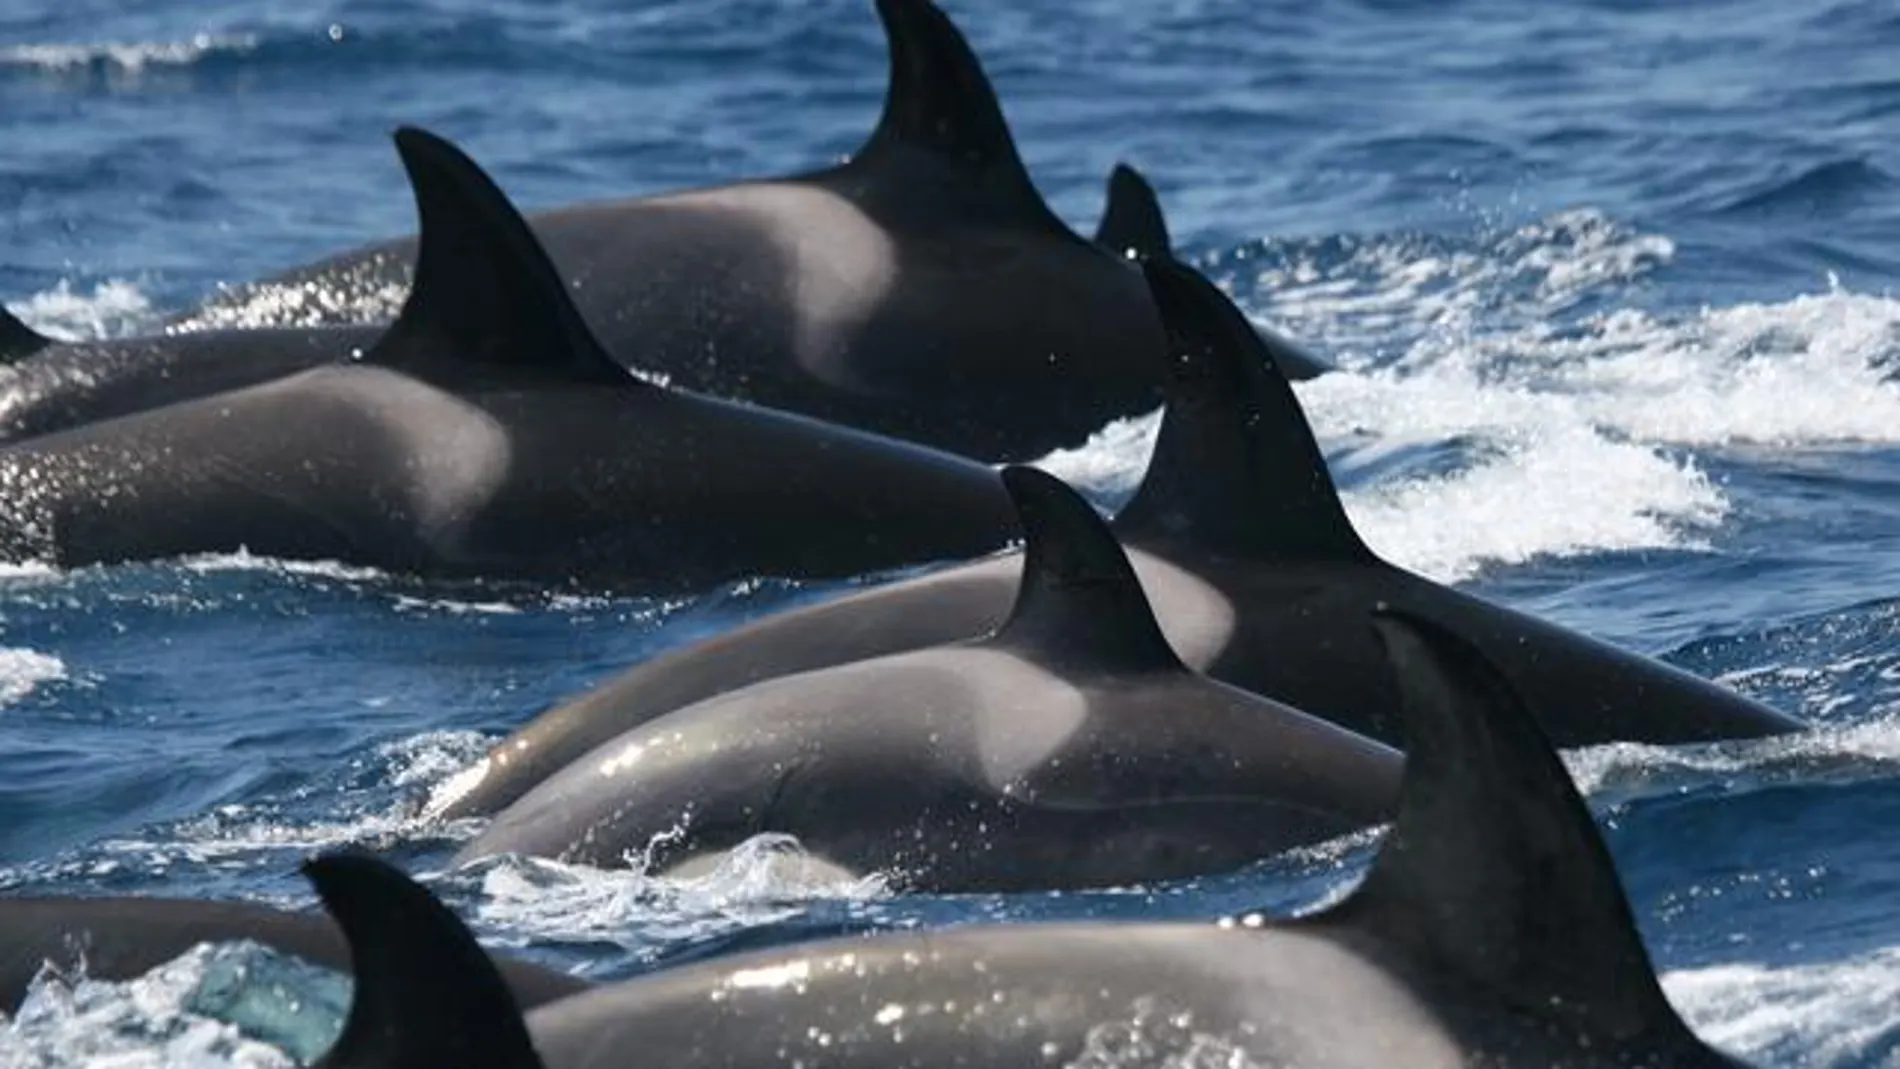 La distribución de las orcas está delimitada al golfo de Cádiz en primavera y el estrecho de Gibraltar en verano